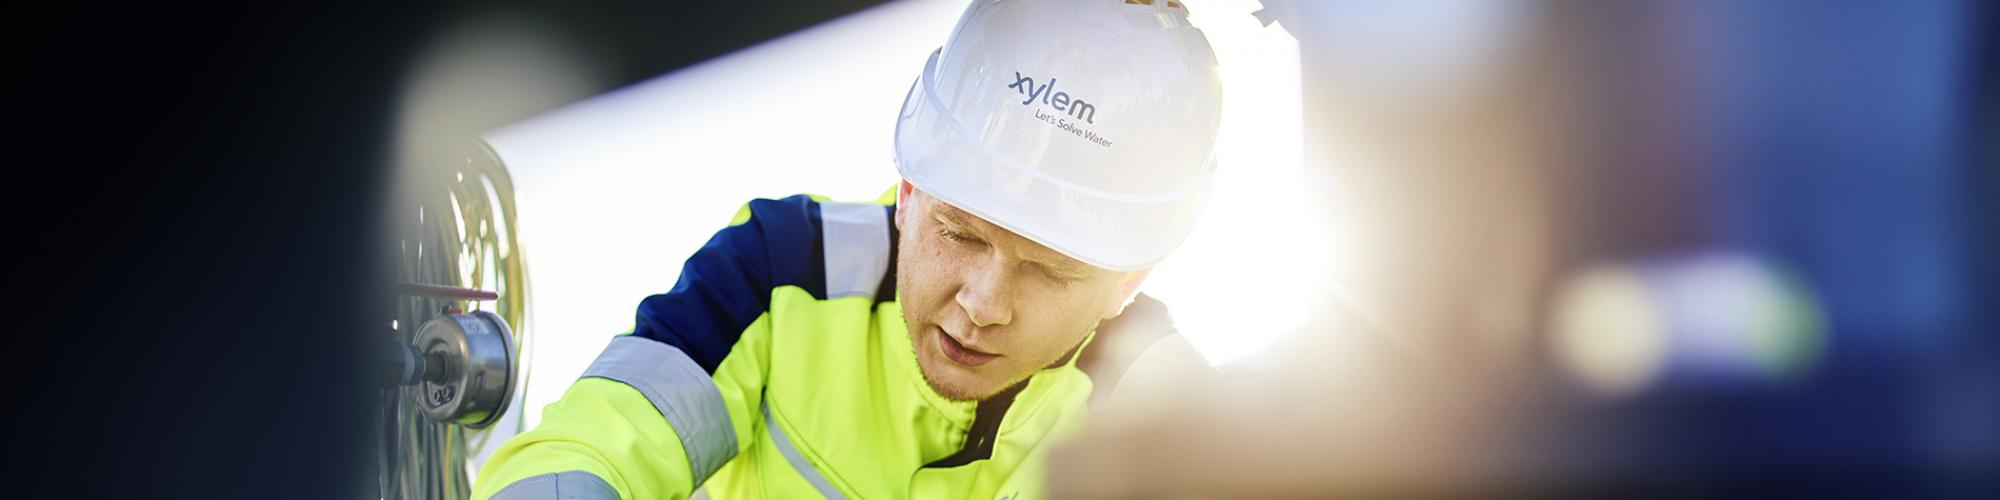 Xylem Water Solutions Deutschland GmbH